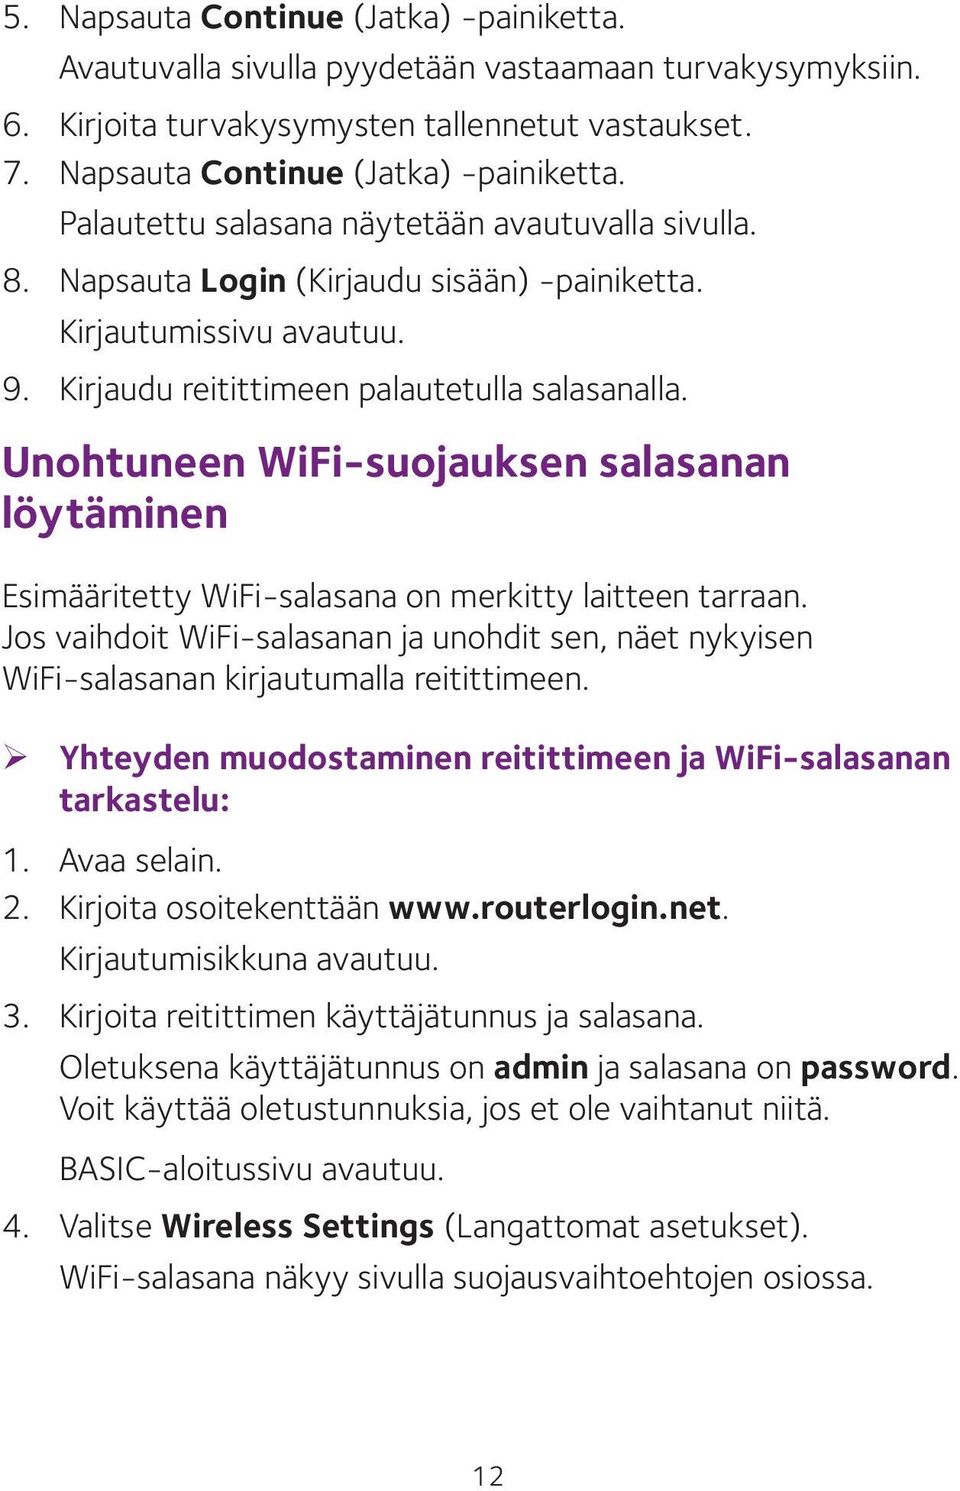 Unohtuneen WiFi-suojauksen salasanan löytäminen Esimääritetty WiFi-salasana on merkitty laitteen tarraan.